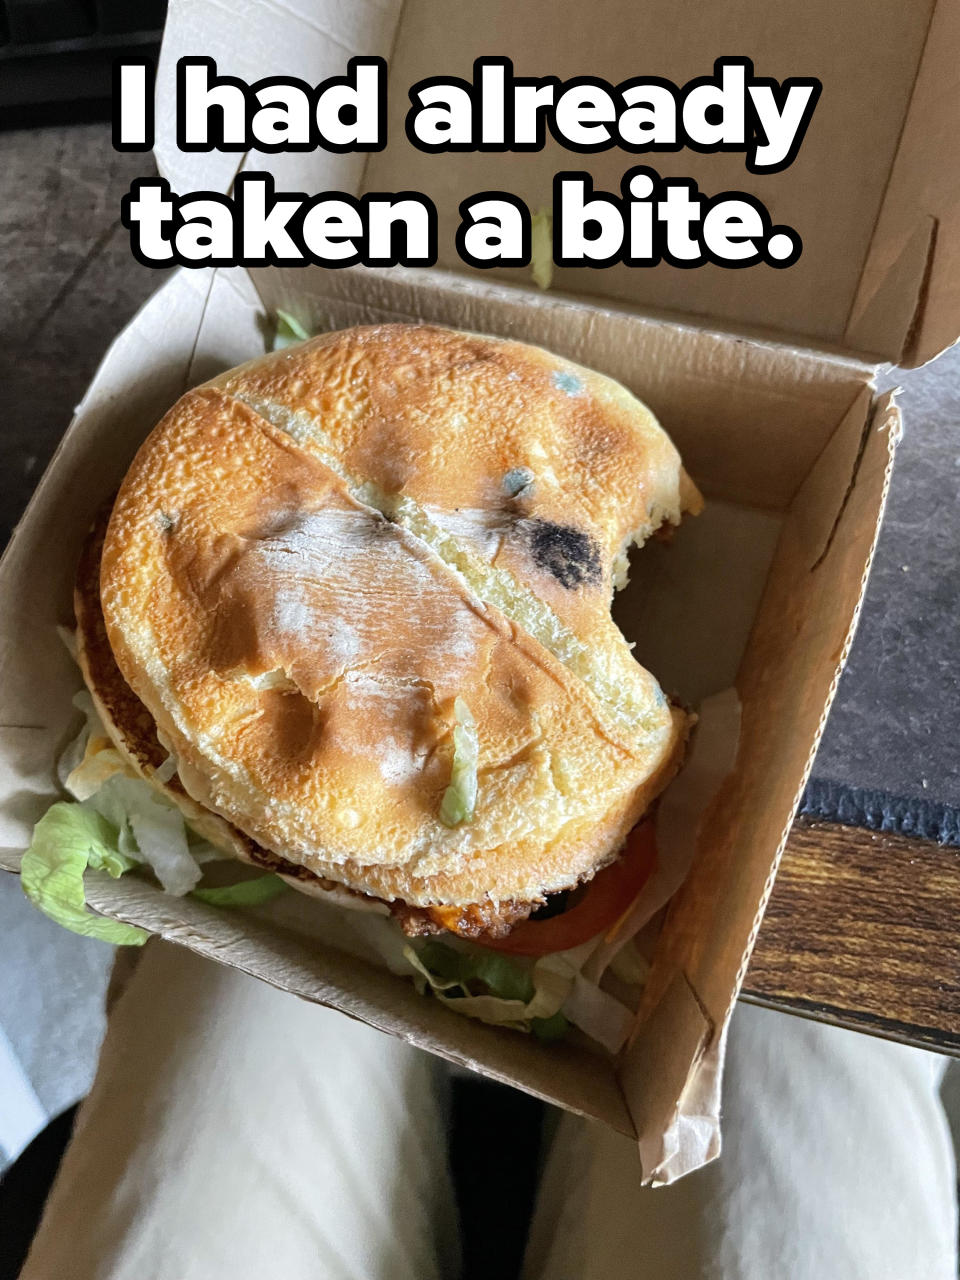 hamburger bun with mold on it